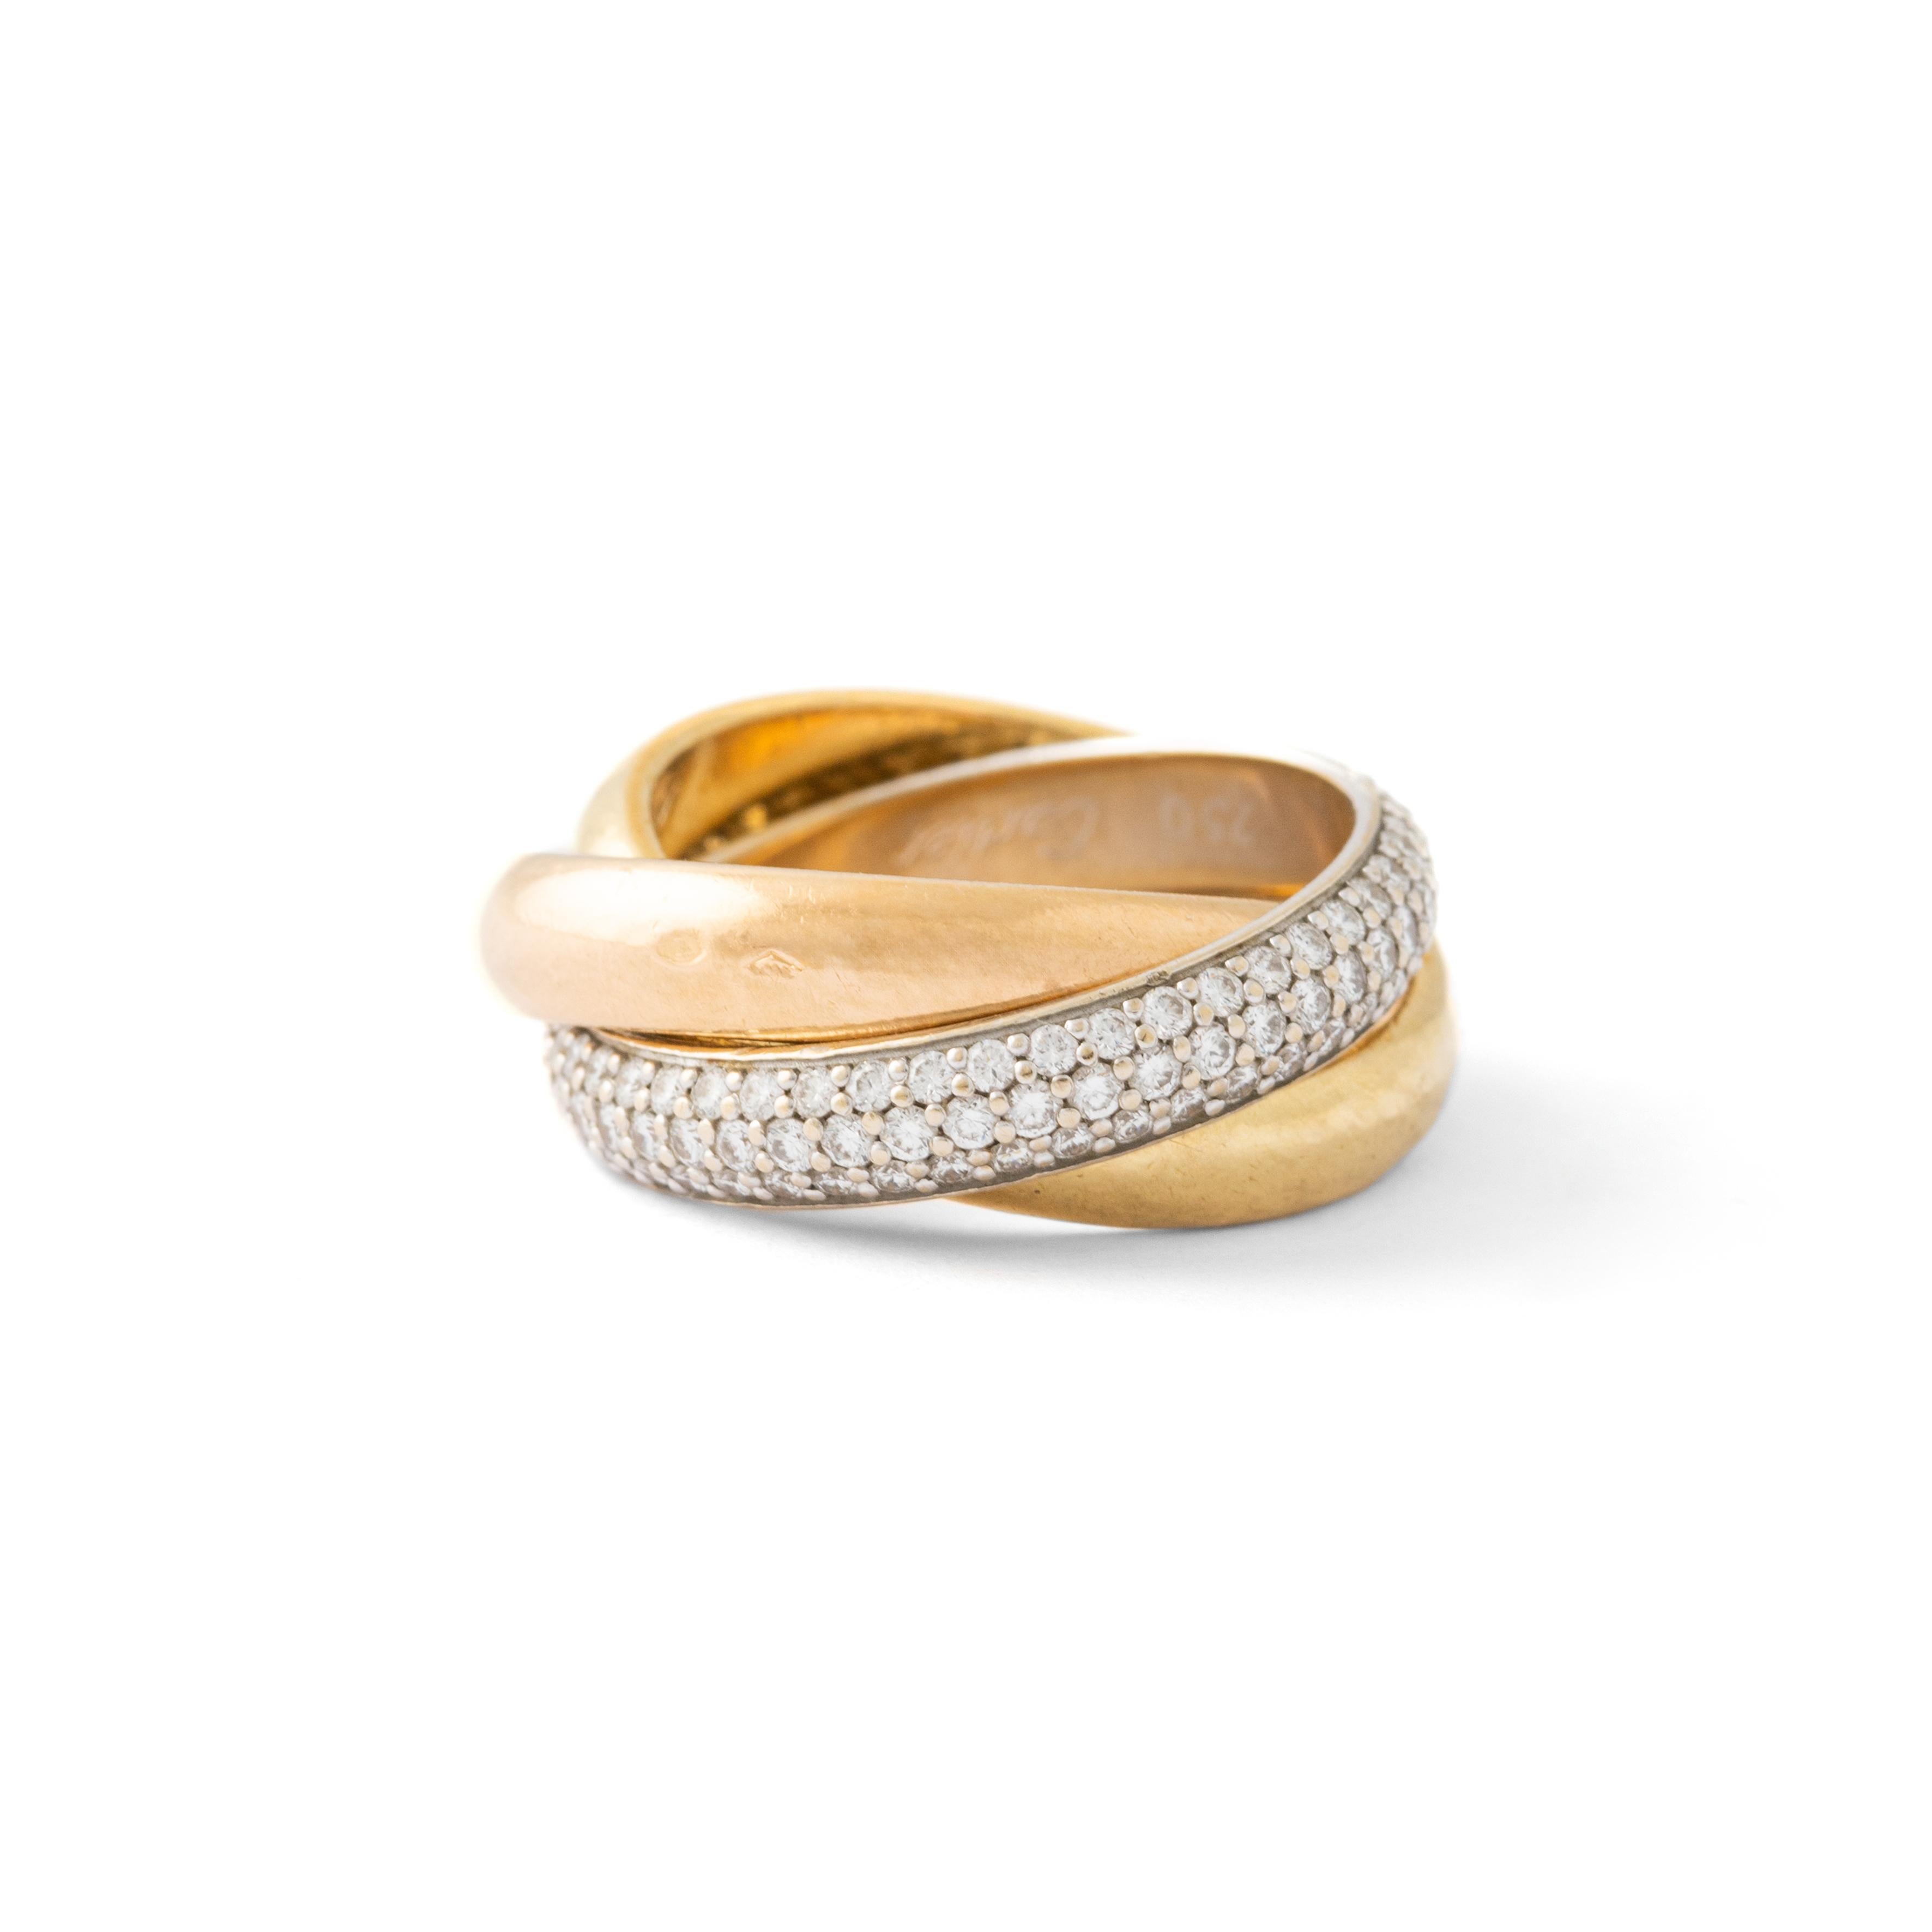 Ein klassischer Cartier-Diamant-Trinitätsring in 18 Karat Gelb-, Rosé- und Weißgold.

Der Ring besteht aus drei miteinander verbundenen Bändern, die so gestaltet sind, dass sie leicht am Finger rollen. Der Farbunterschied ist dezent, aber dennoch